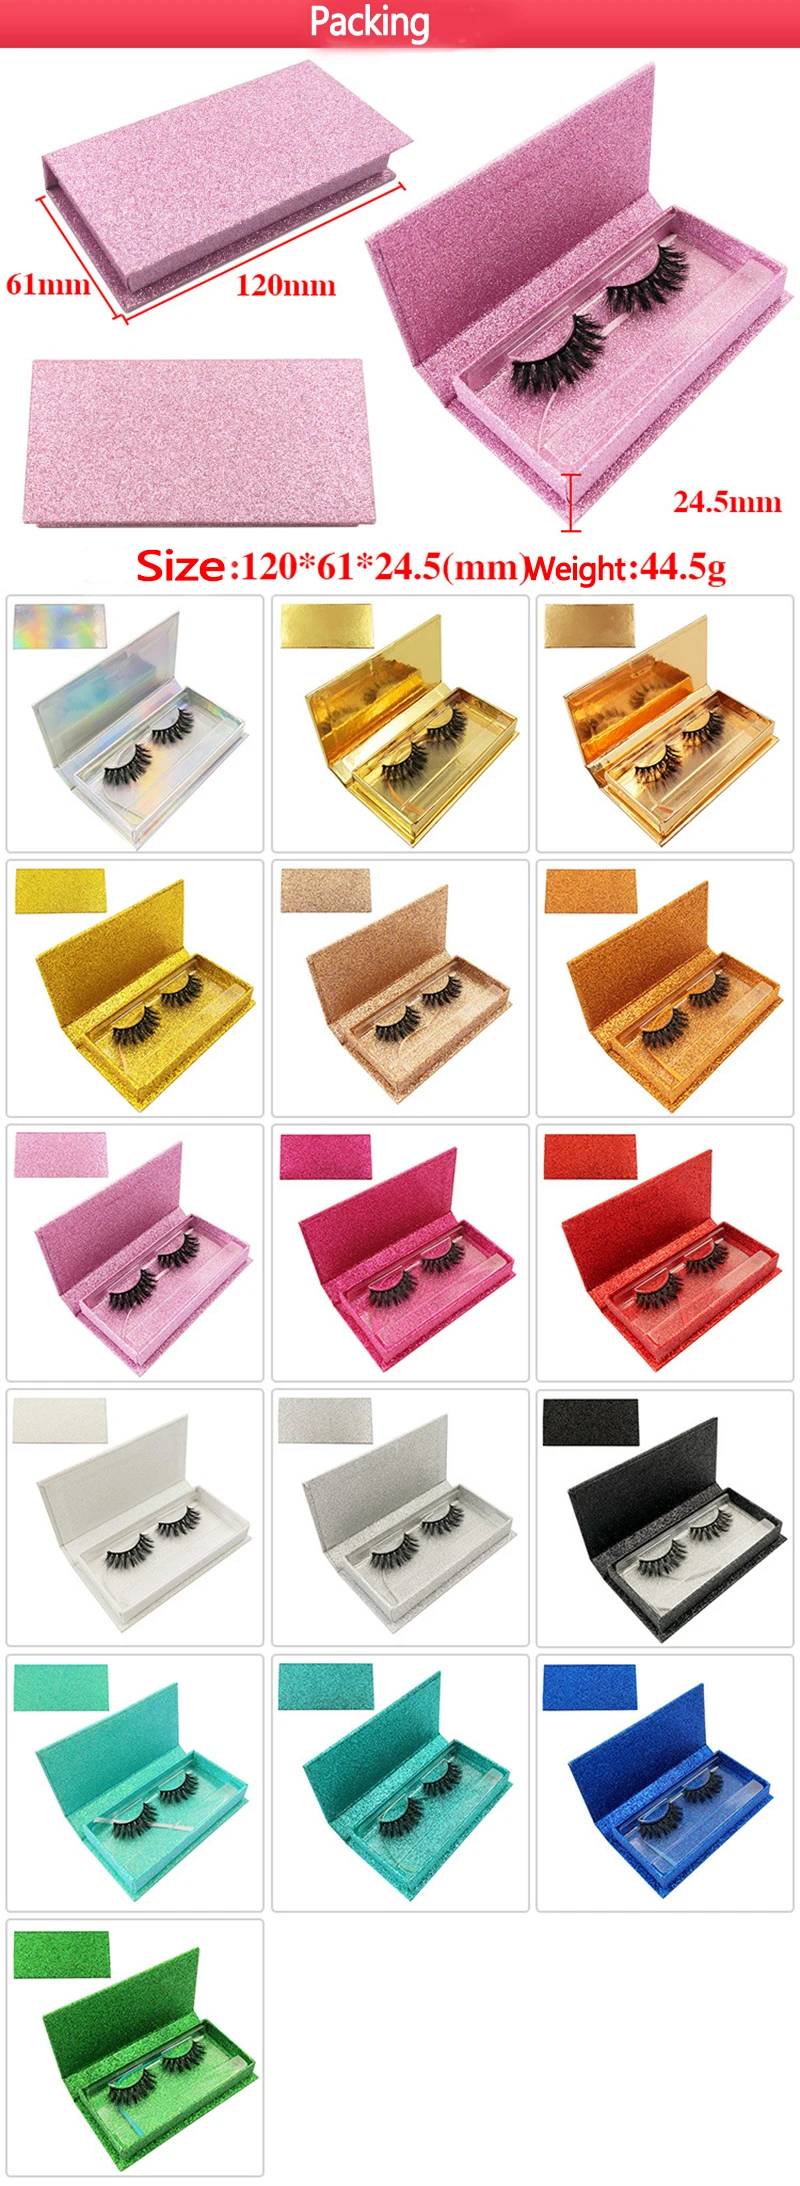 50 пар ресниц 3D норковые ресницы ручной работы норковые драматические ресницы 12 стилей бескровные ресницы многоразового применения Пользовательский логотип